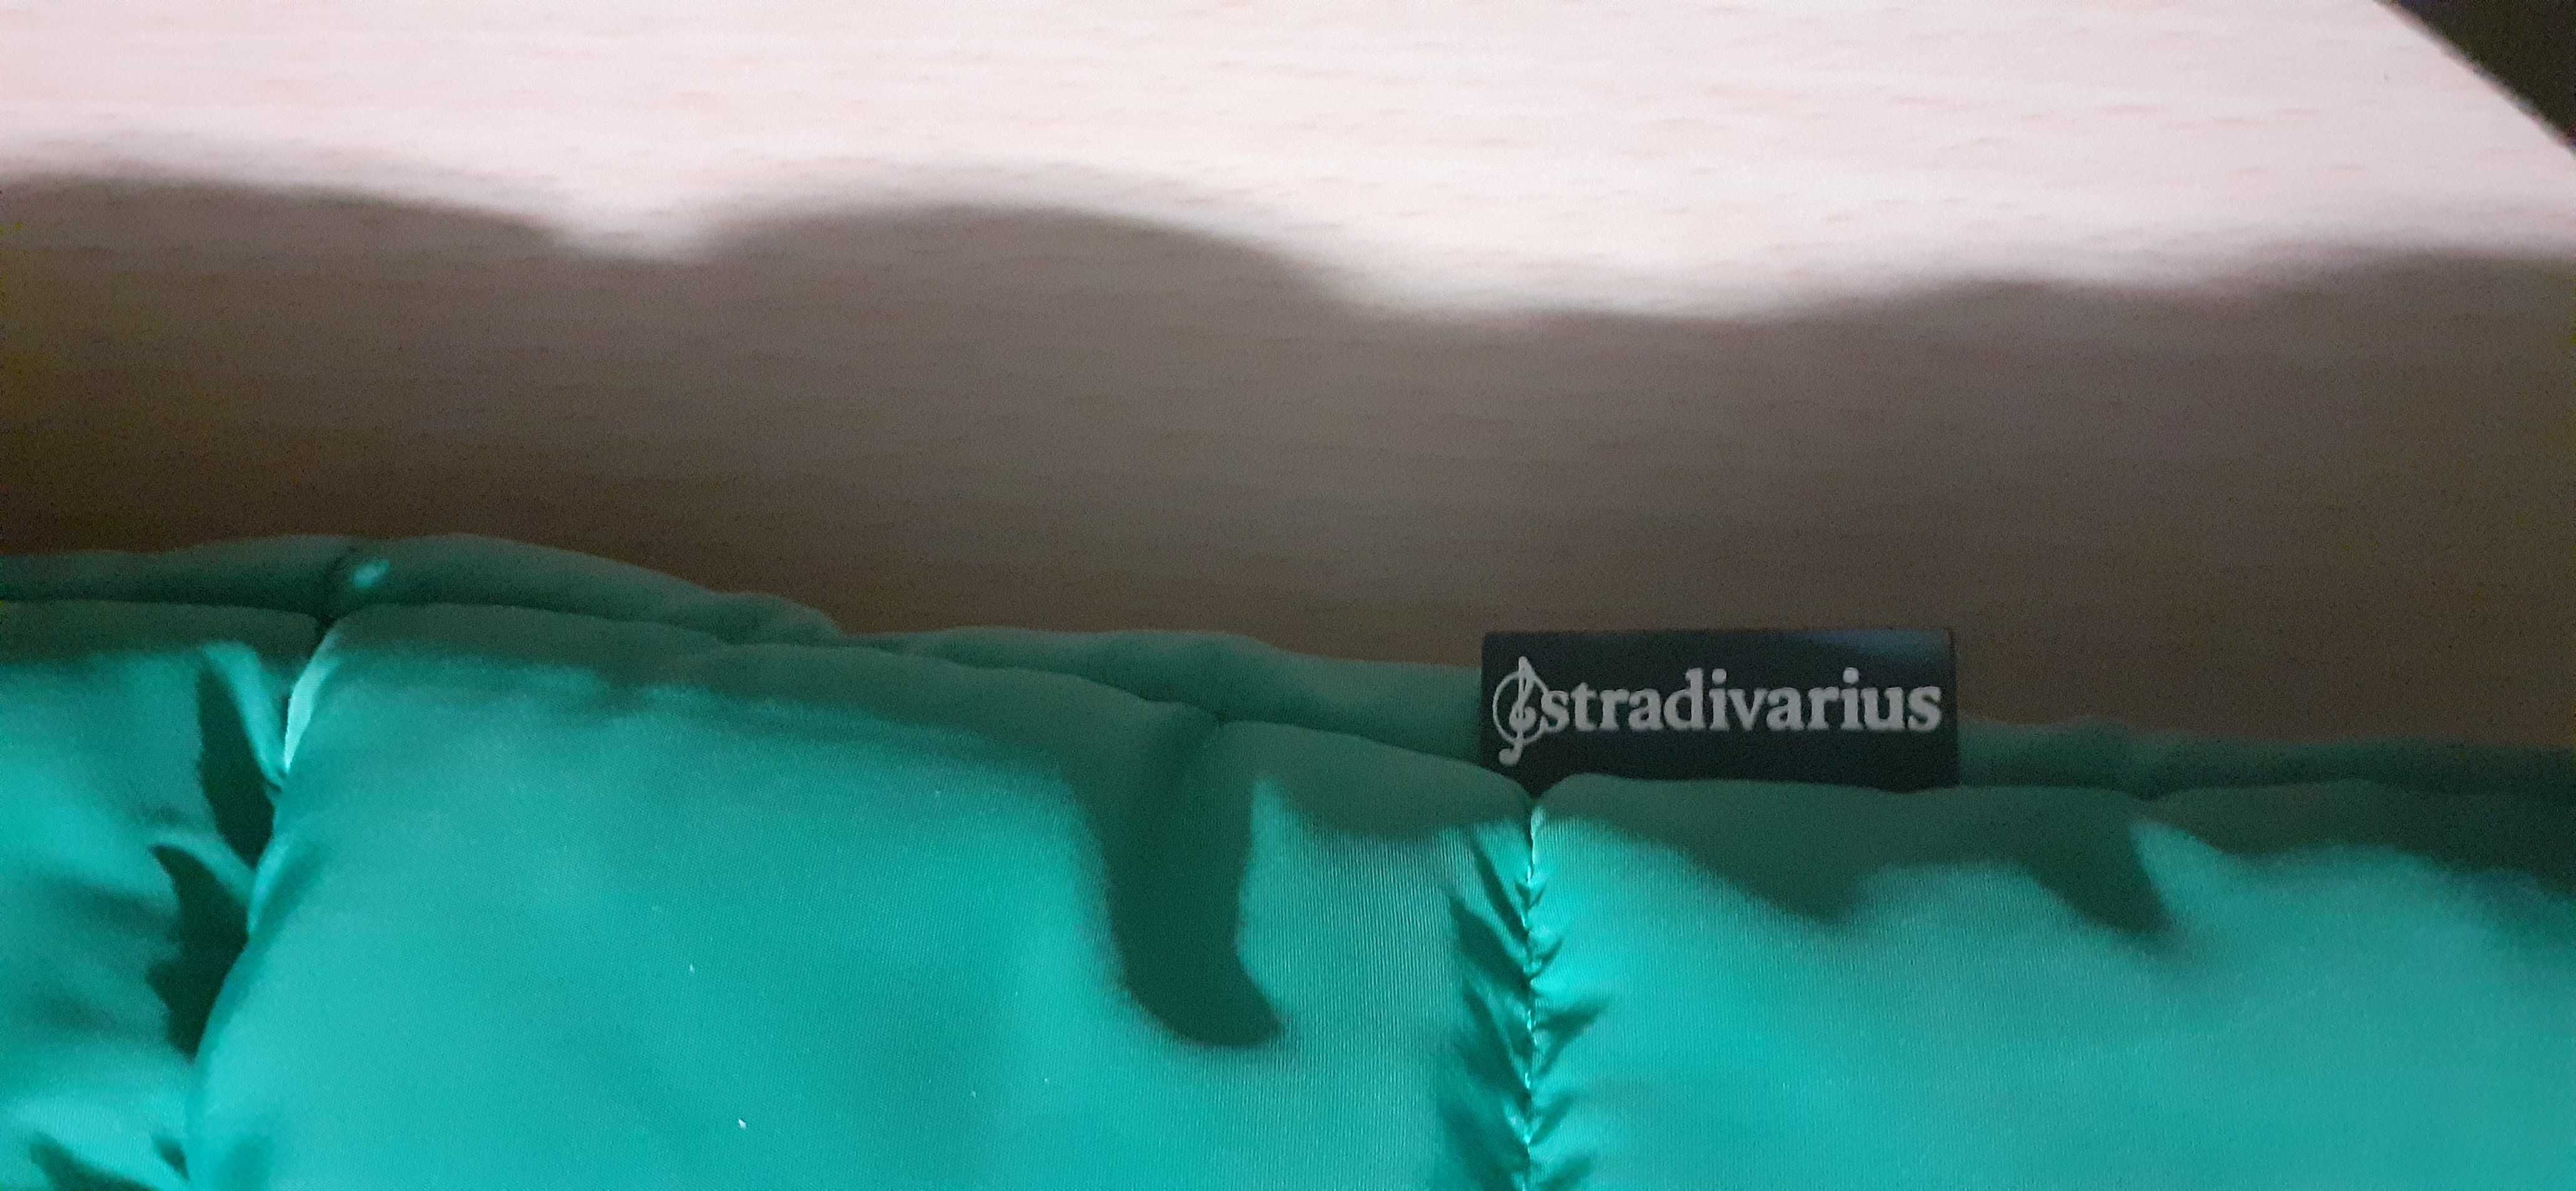 Carteira saco verde da Stradivarius